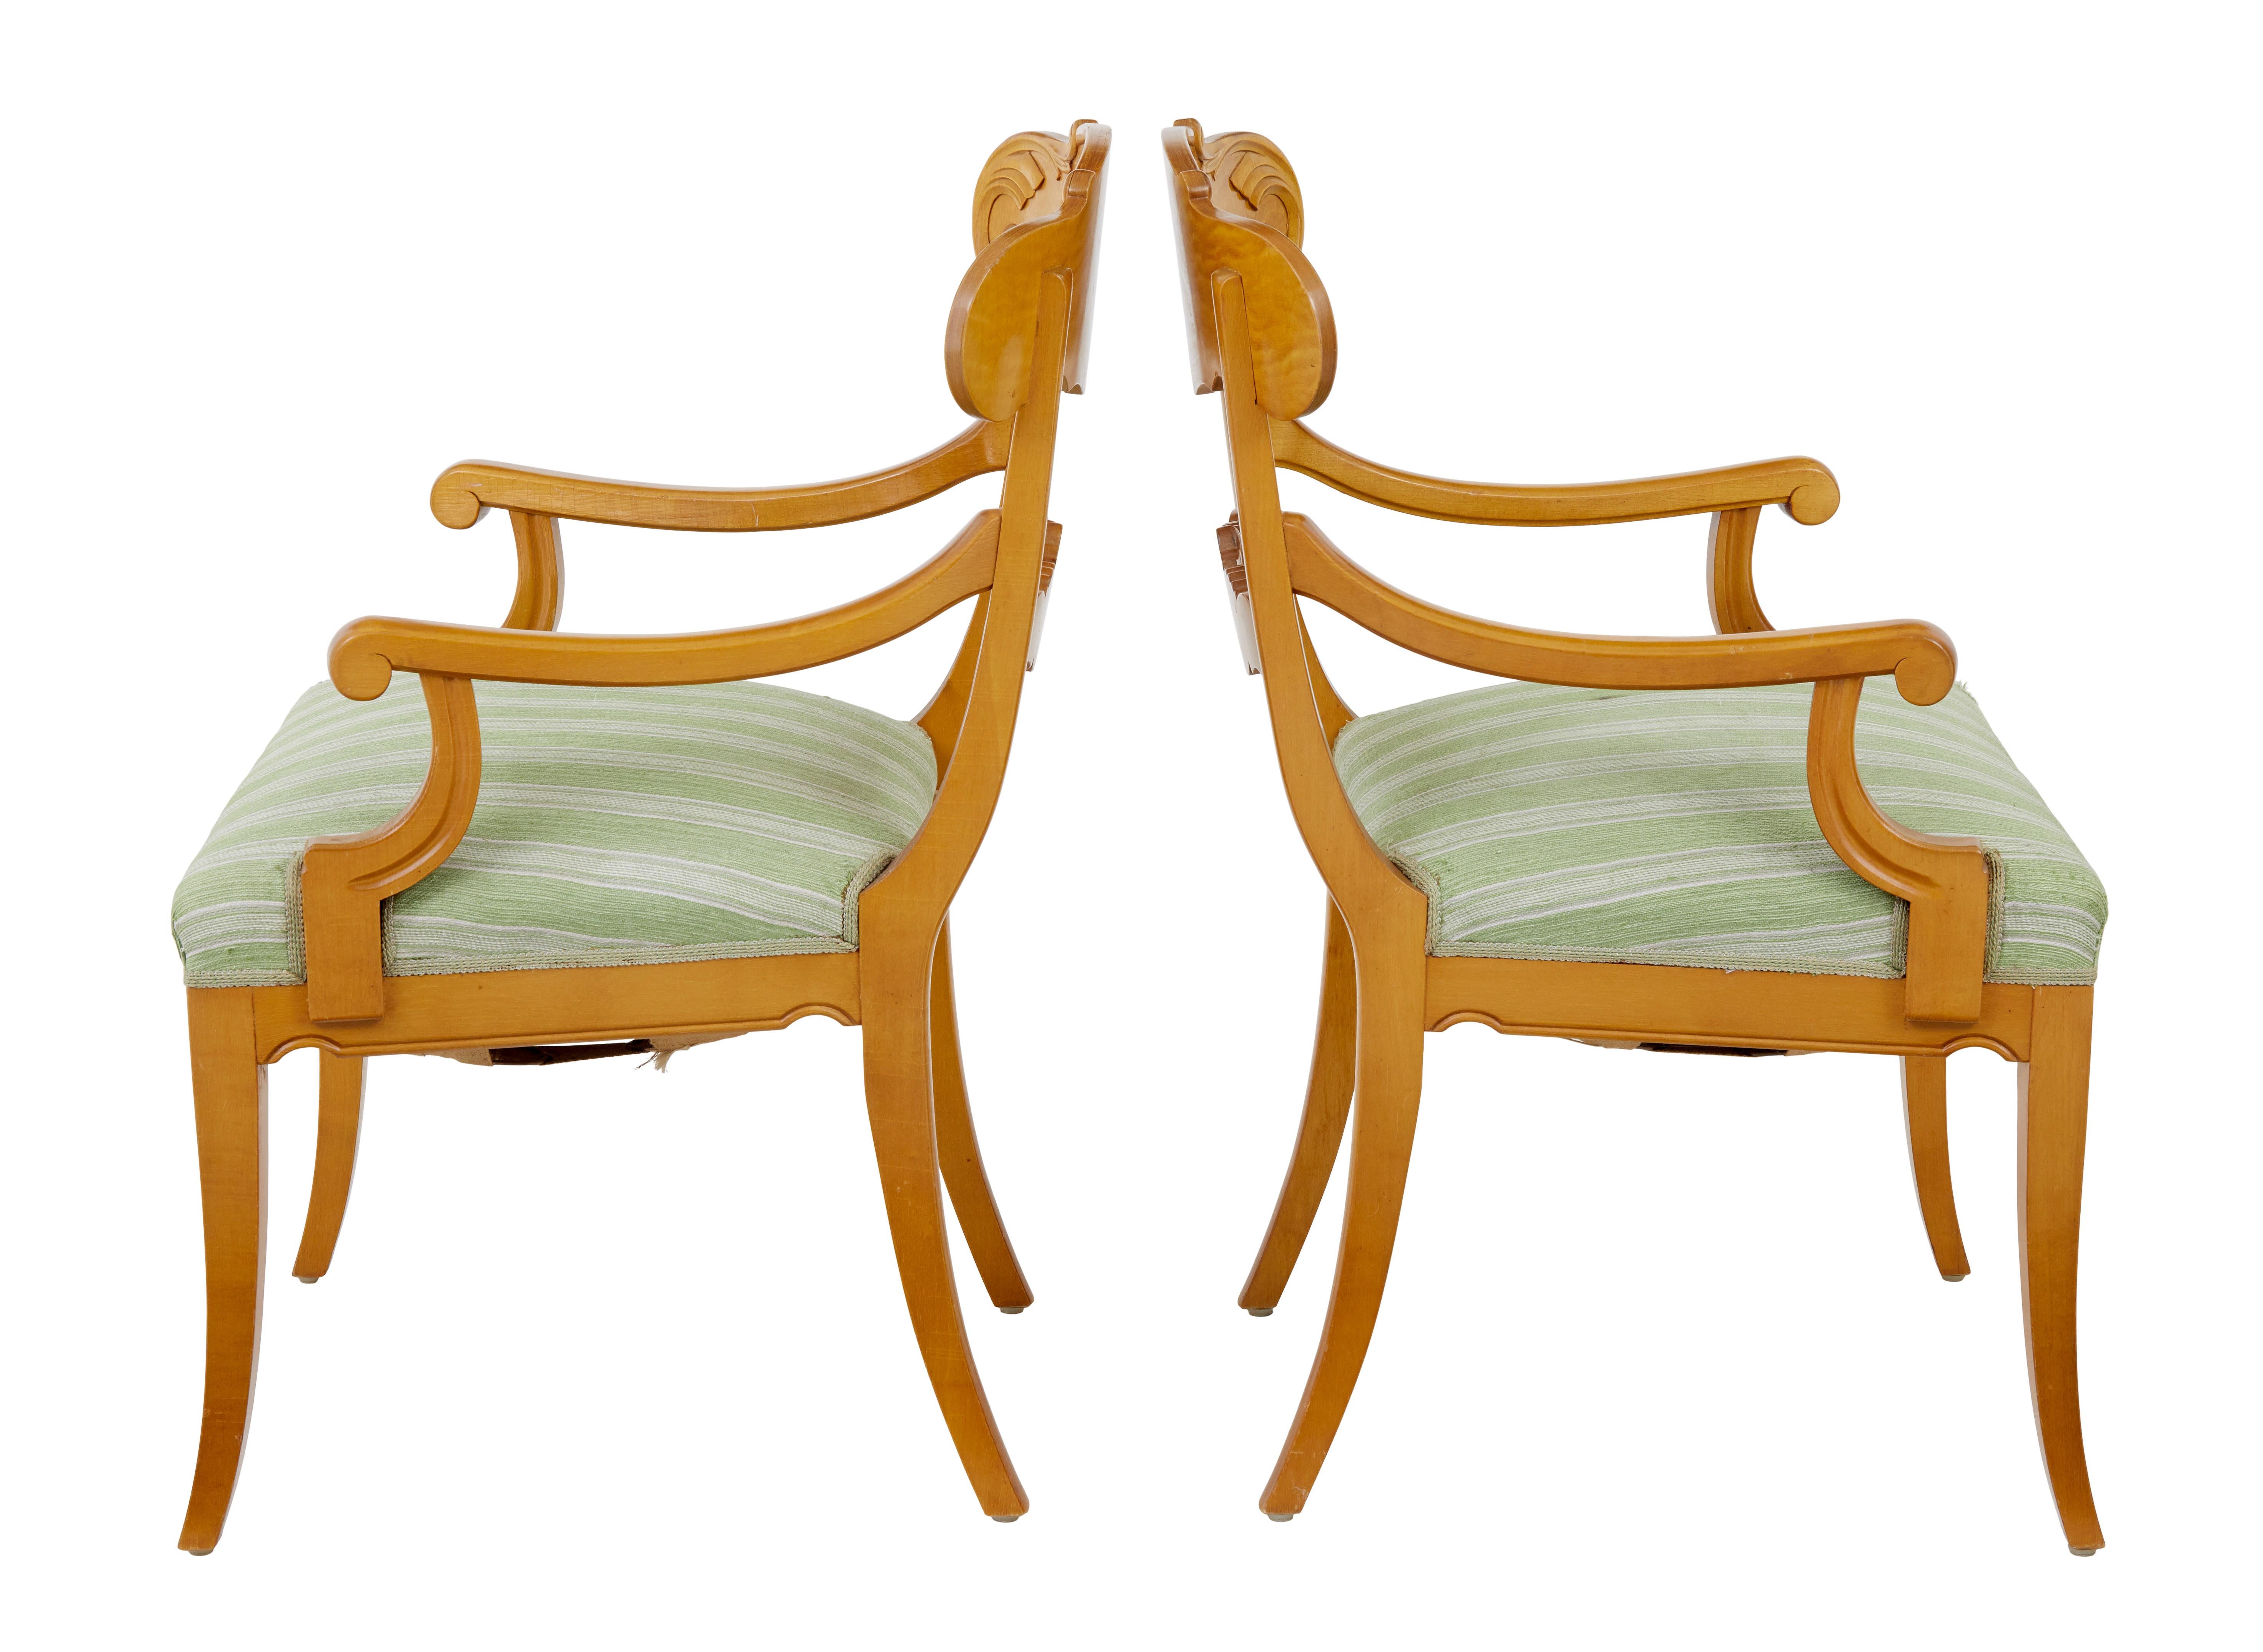 Ein Paar geschnitzte schwedische Birkensessel aus dem frühen 20. Jahrhundert, um 1920.

Ein Paar Sessel aus Birkenholz von guter Qualität, ganz im Geschmack von Karl Johan.

Geformte und geschnitzte Rückenlehne, die in die geschwungenen Arme